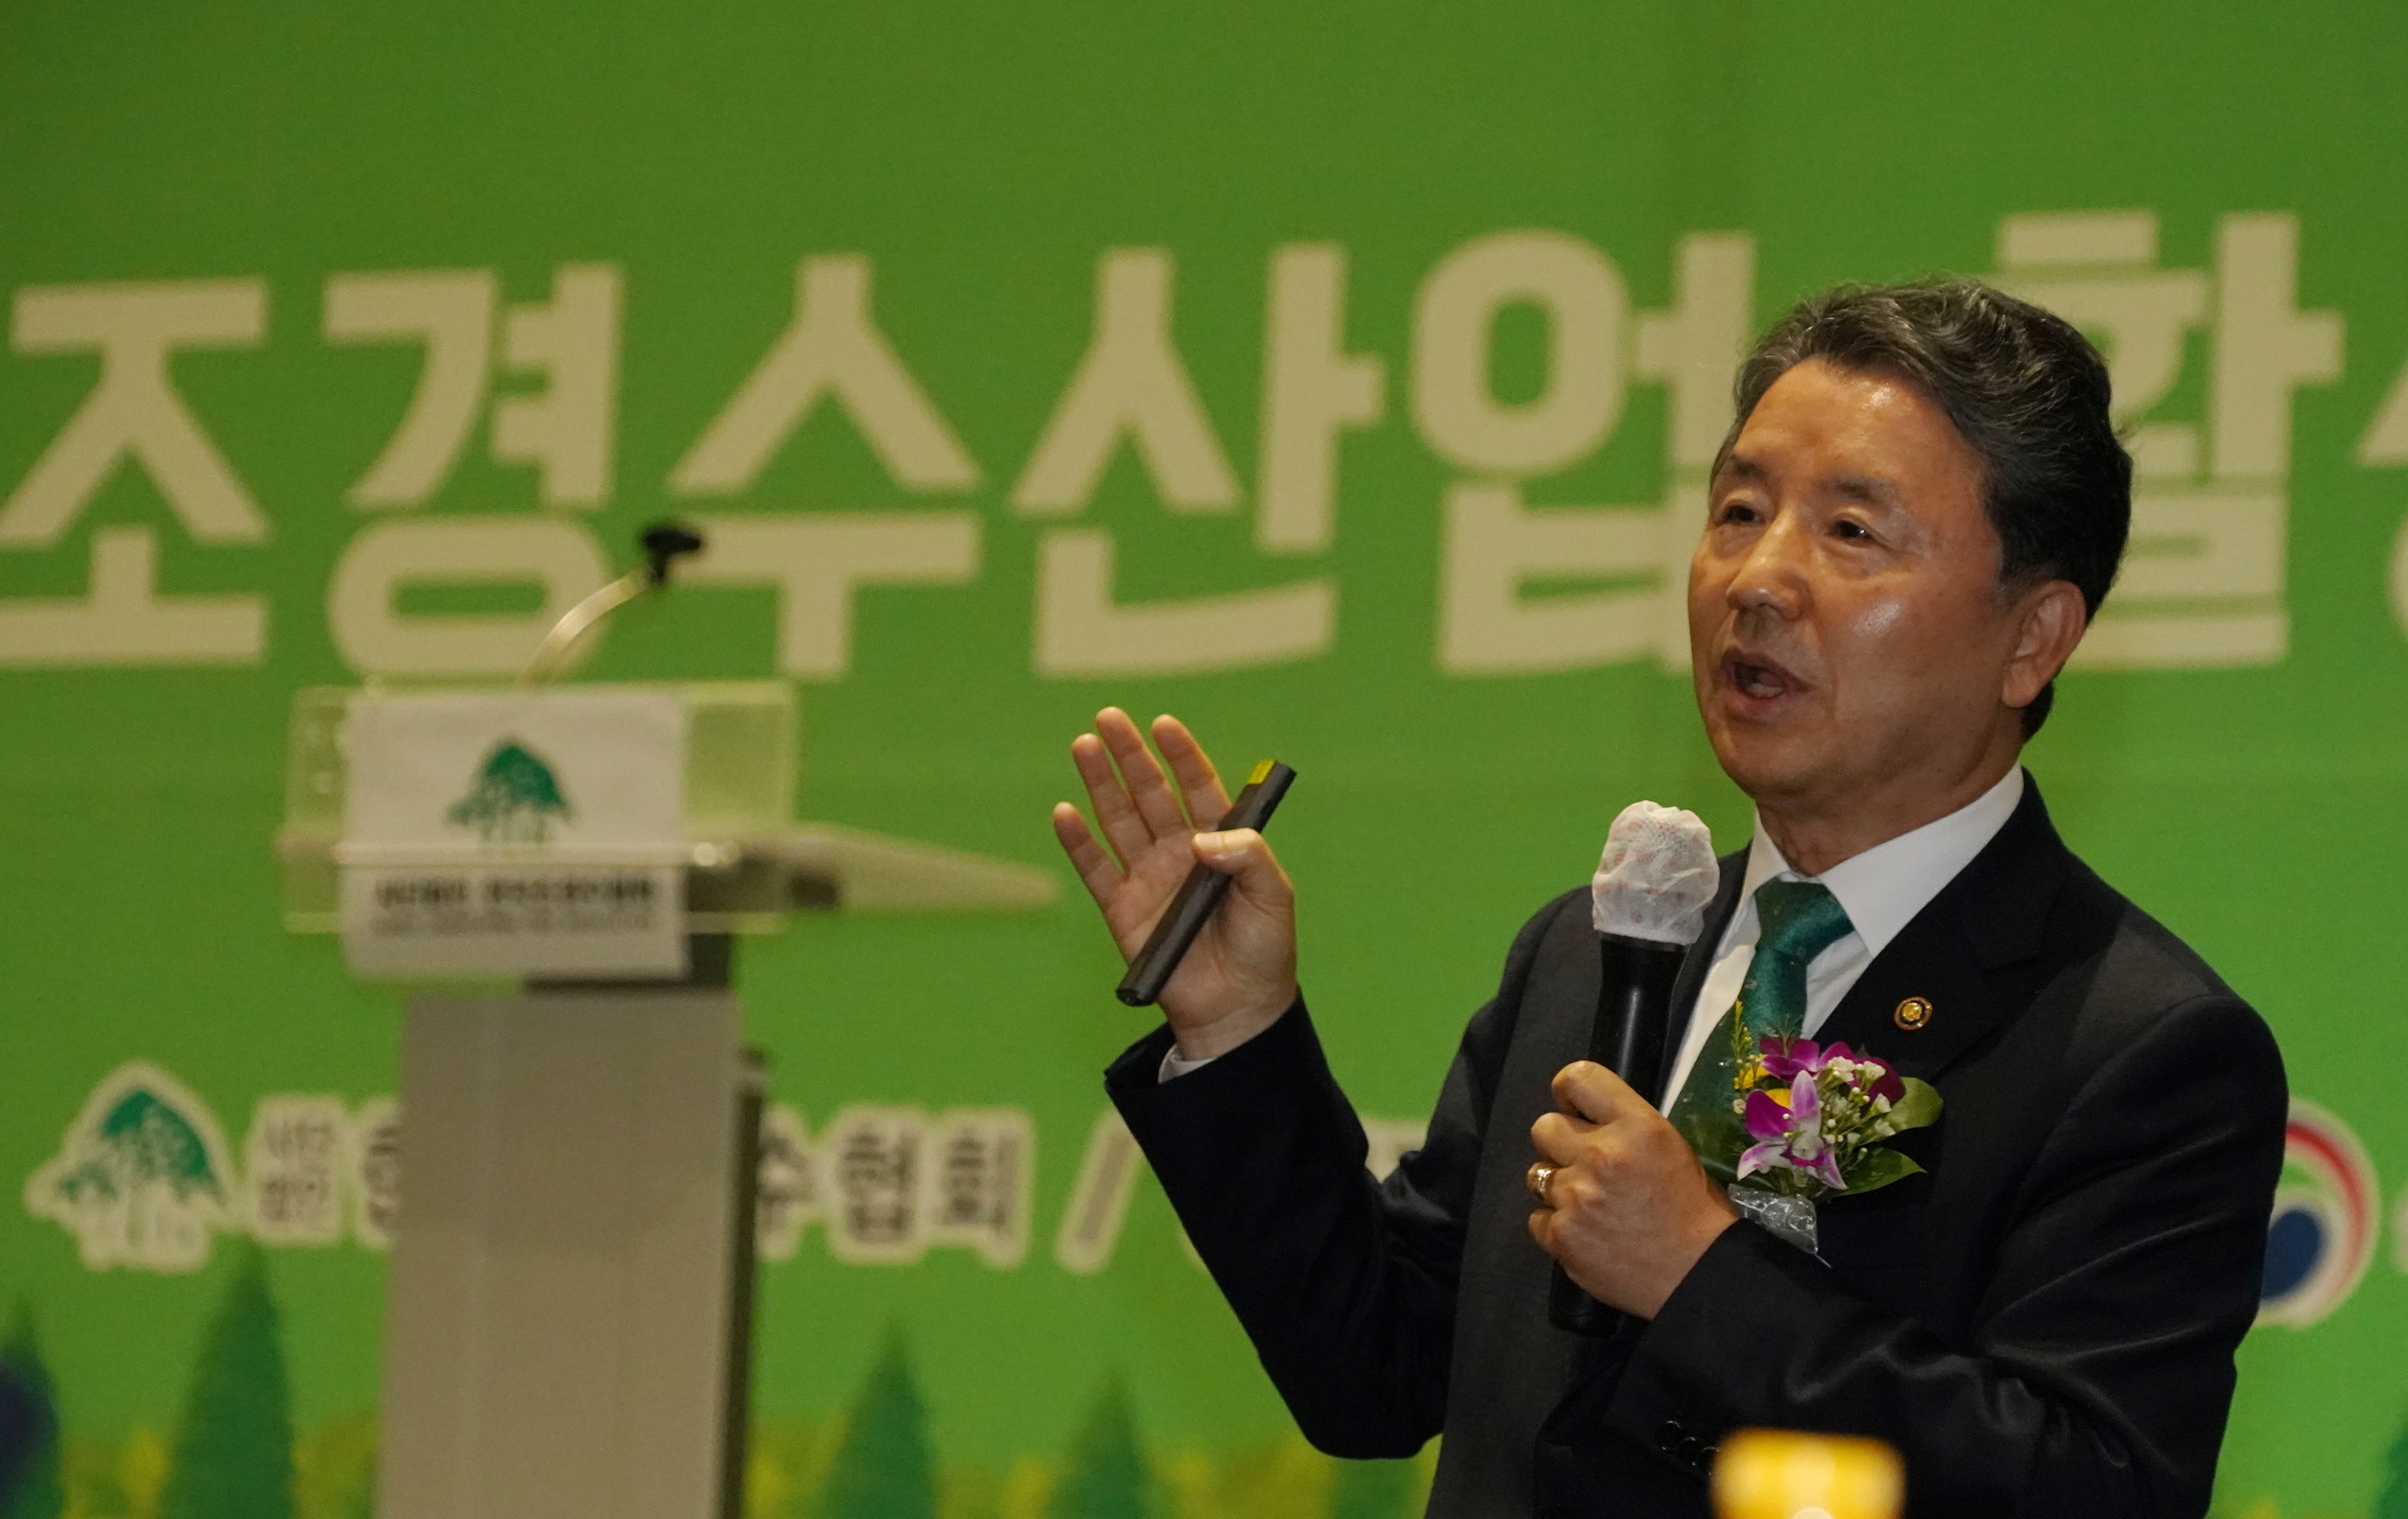 남성현 산림청장, 조경수산업 활성화 발전 포럼에서 특강 